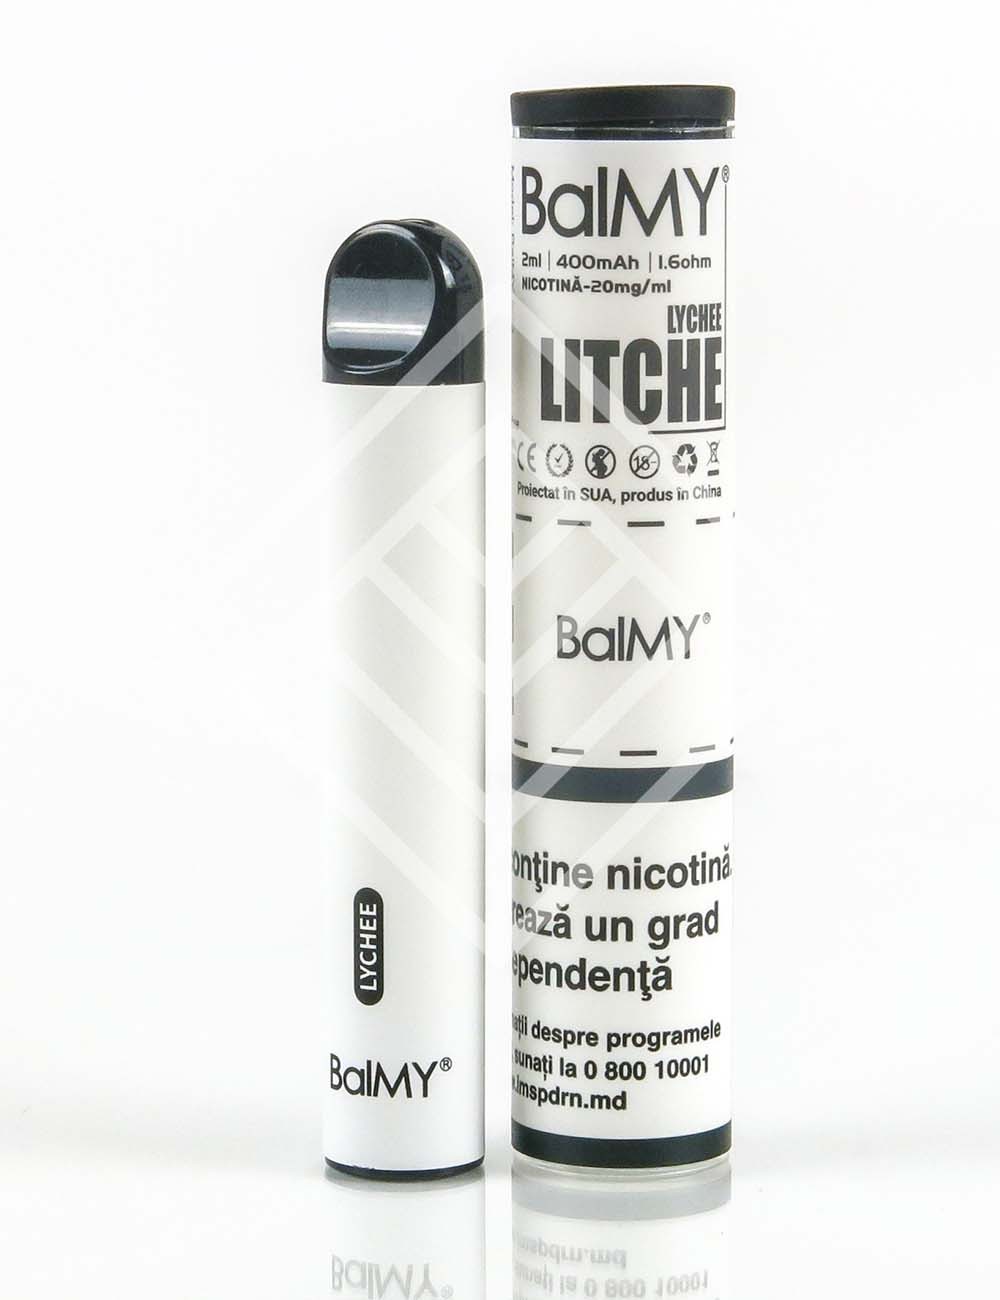 BalMY500 Lychee